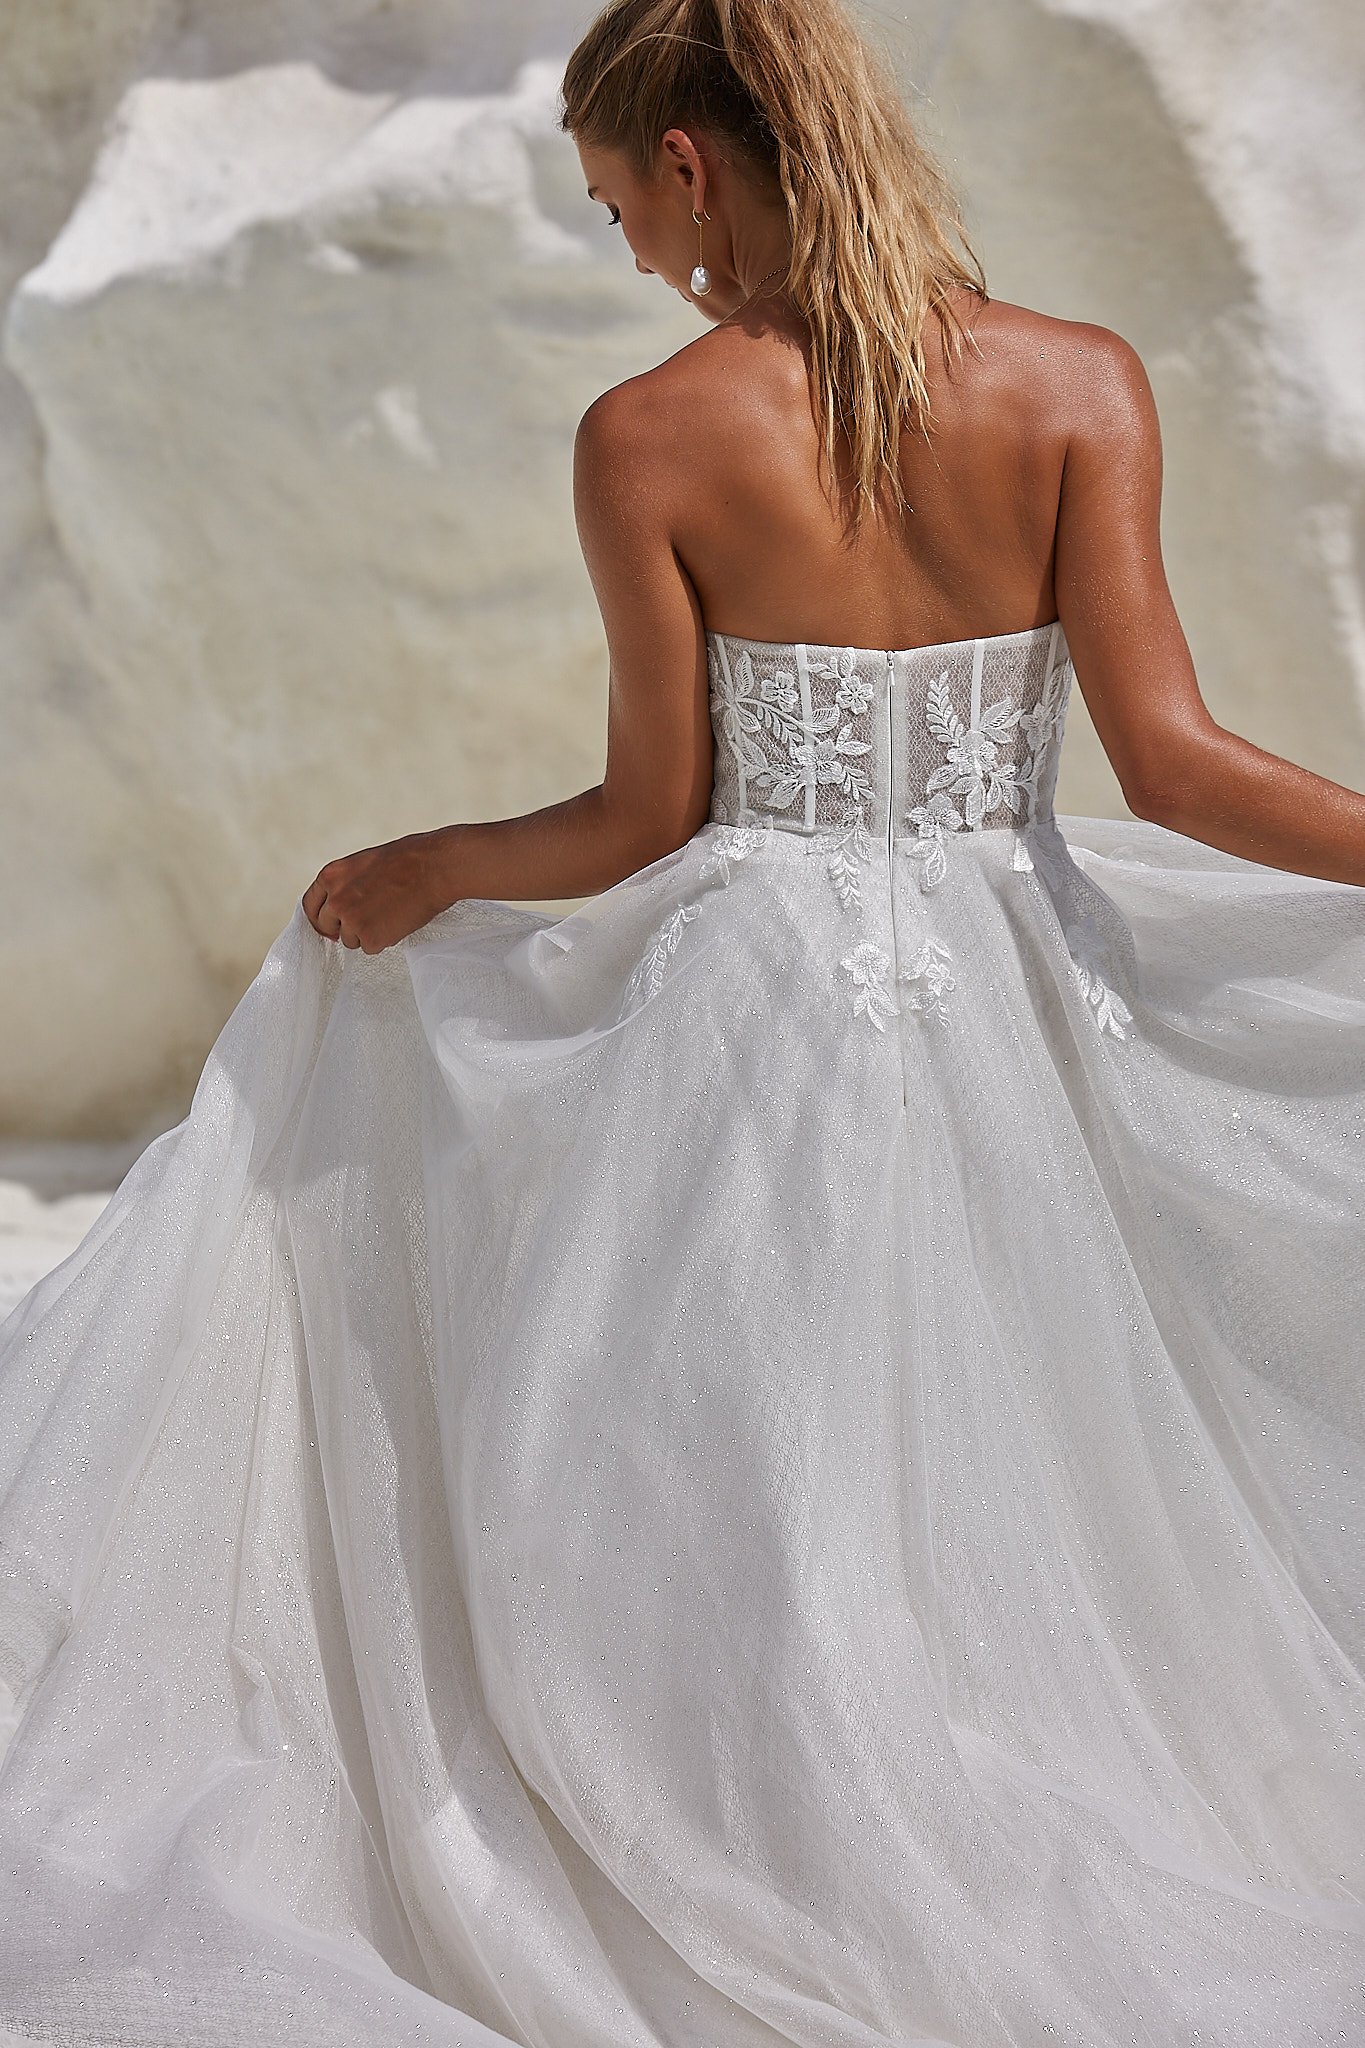 Tania Olsen Lake Wedding dress.jpg